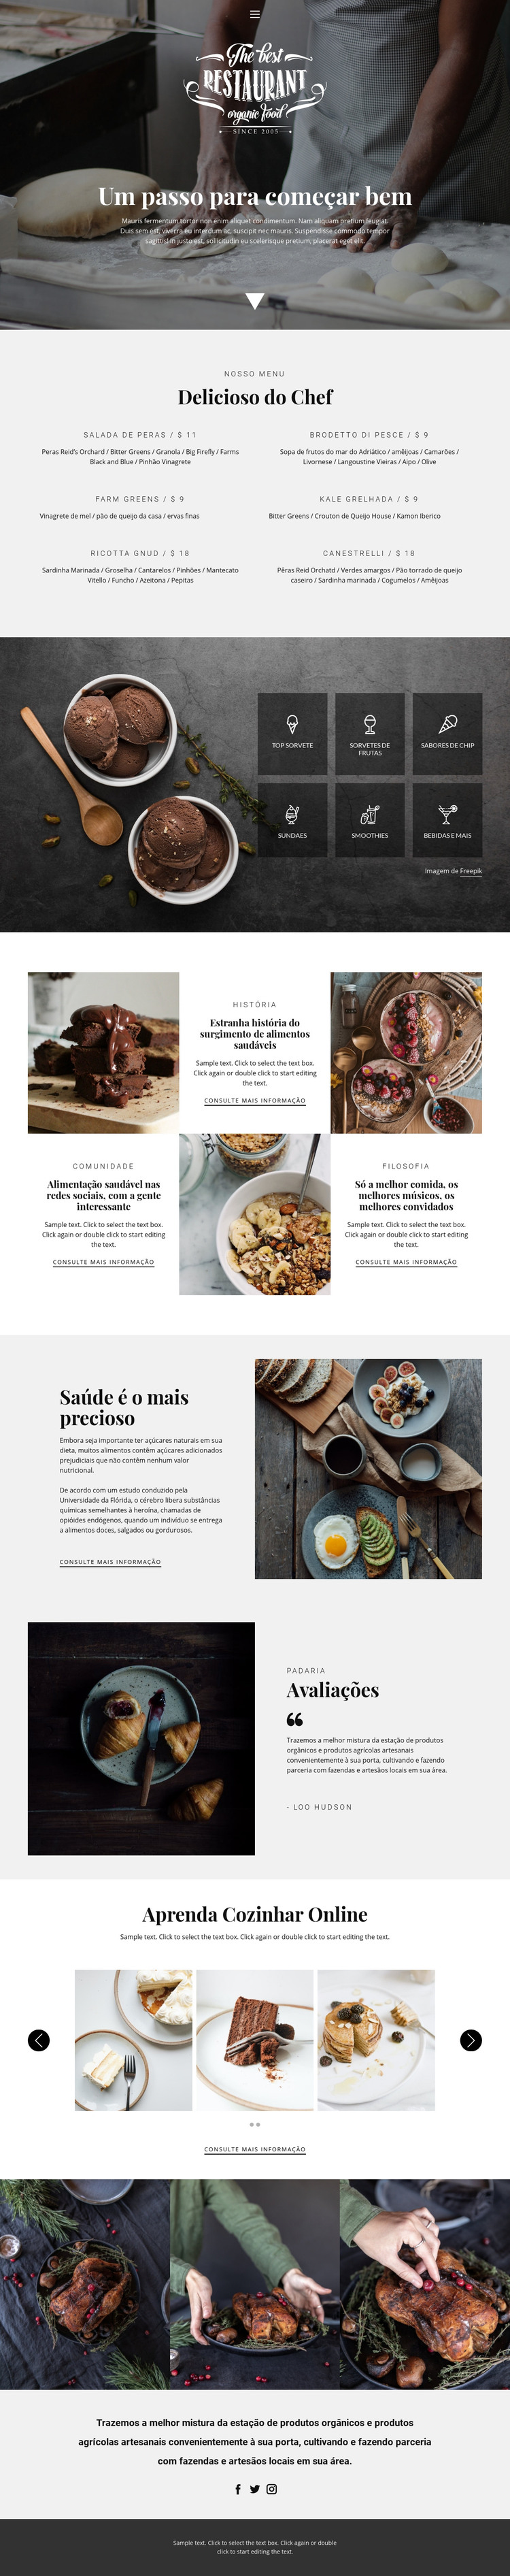 Receitas e aulas de culinária Modelo HTML